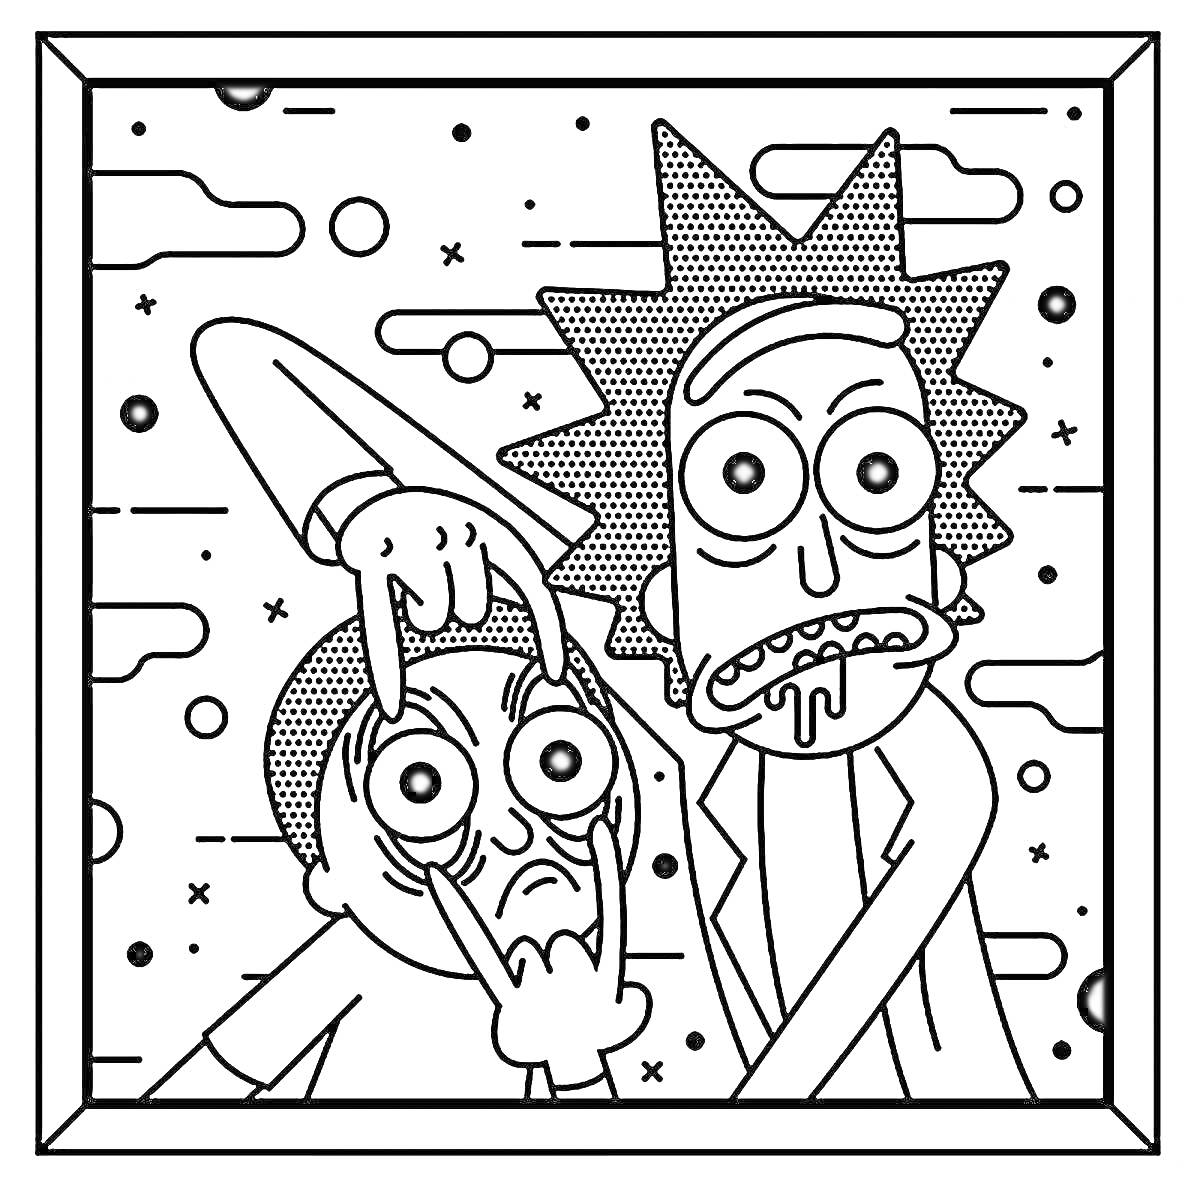 Раскраска Два персонажа с комичными выражениями лиц на фоне космической среды